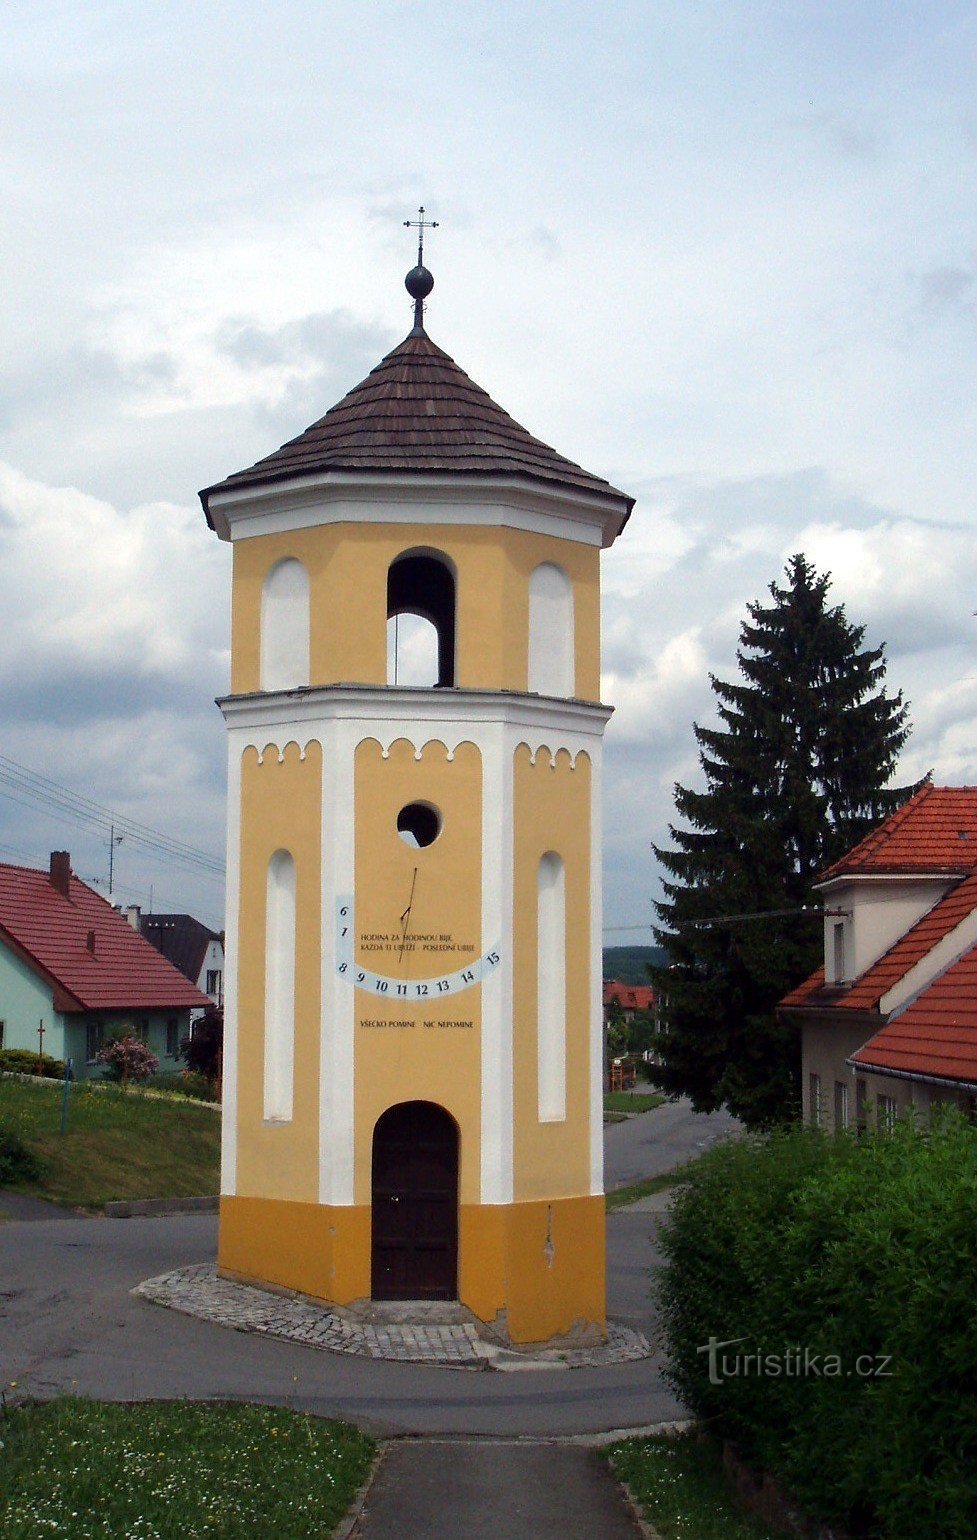 kapel i landsbyen i Skalička